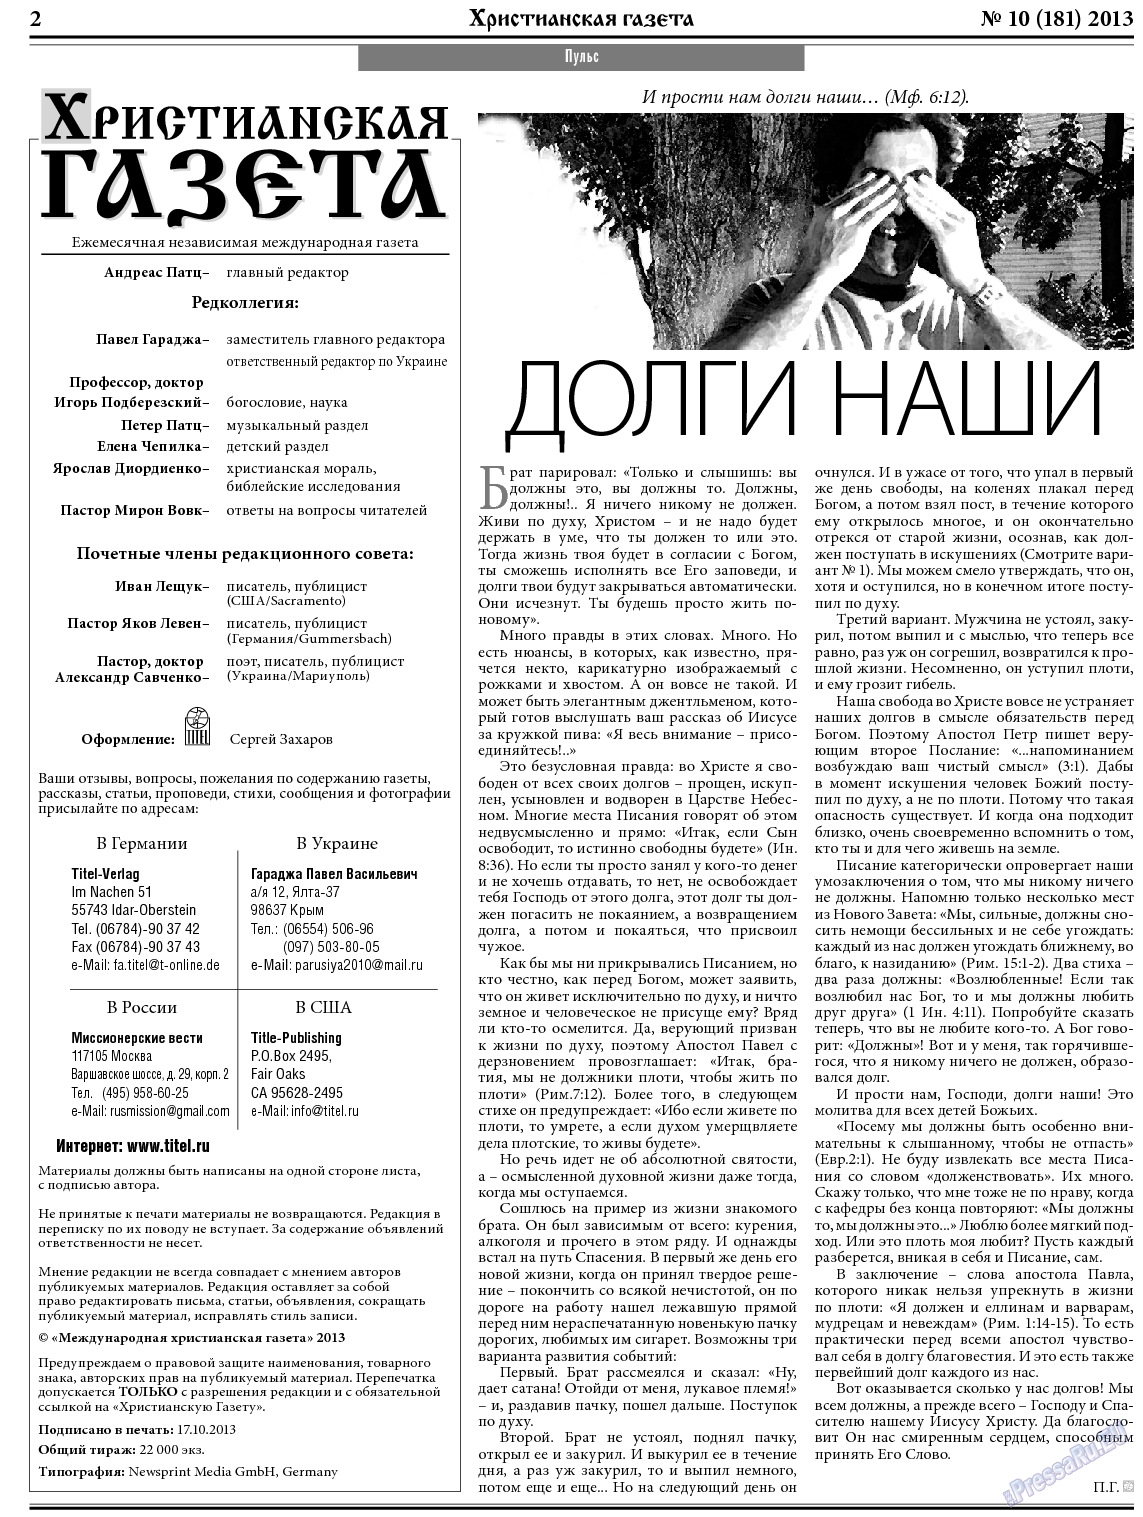 Христианская газета, газета. 2013 №10 стр.2